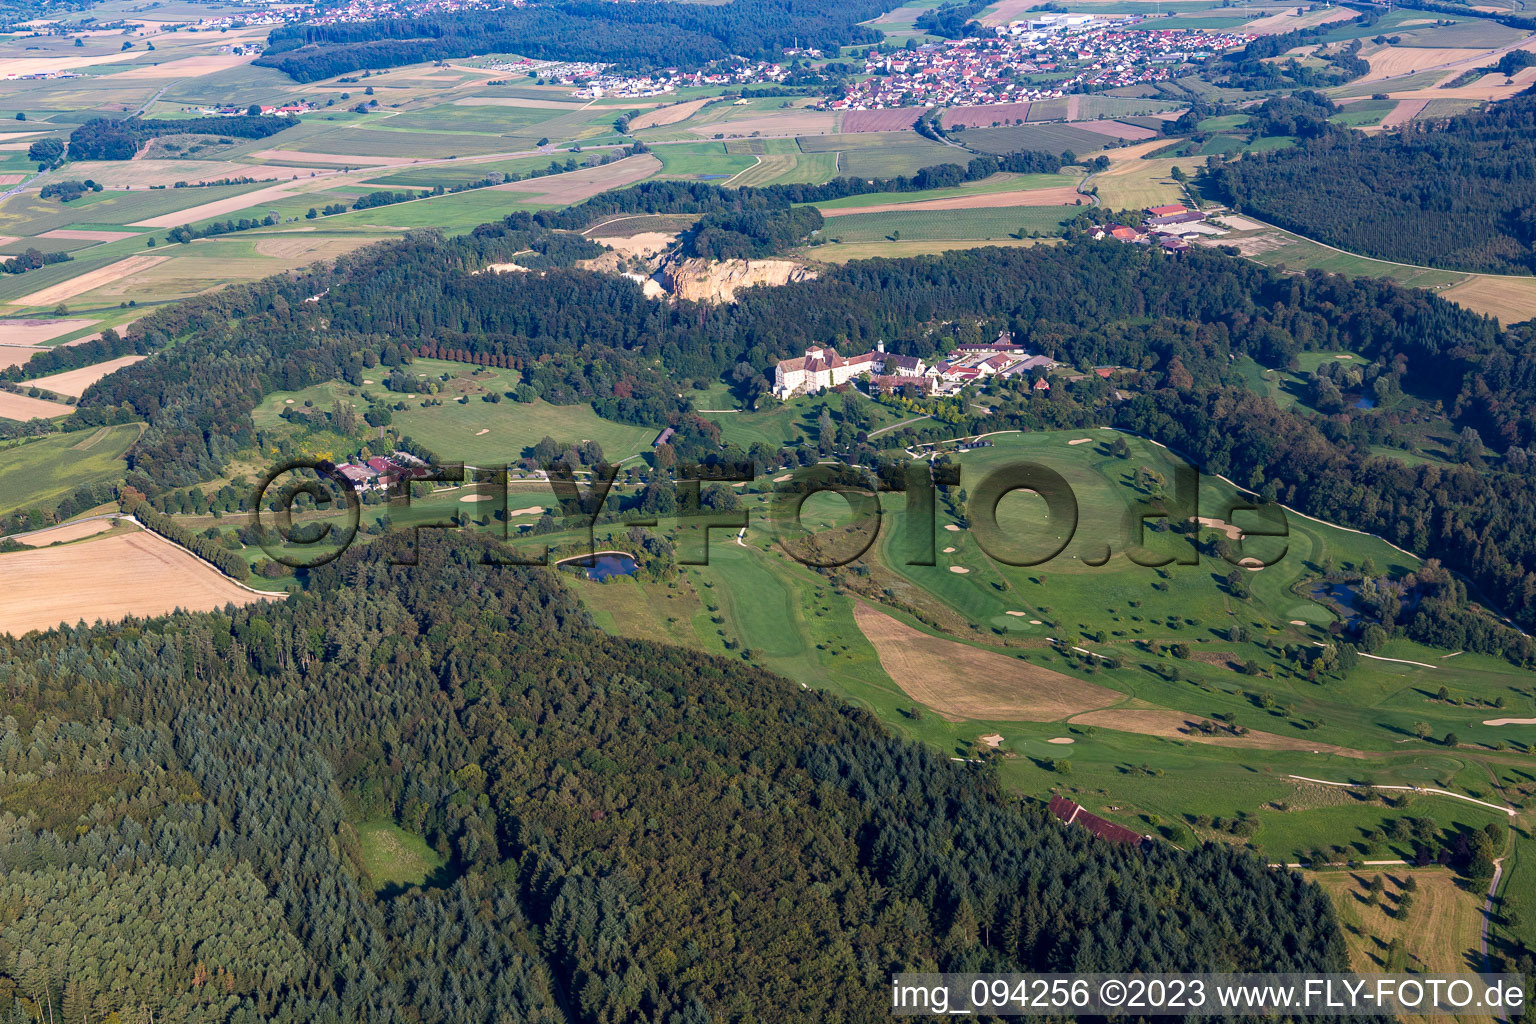 Vue oblique de Château de Langenstein, terrain de golf The Country Club à Orsingen-Nenzingen dans le département Bade-Wurtemberg, Allemagne